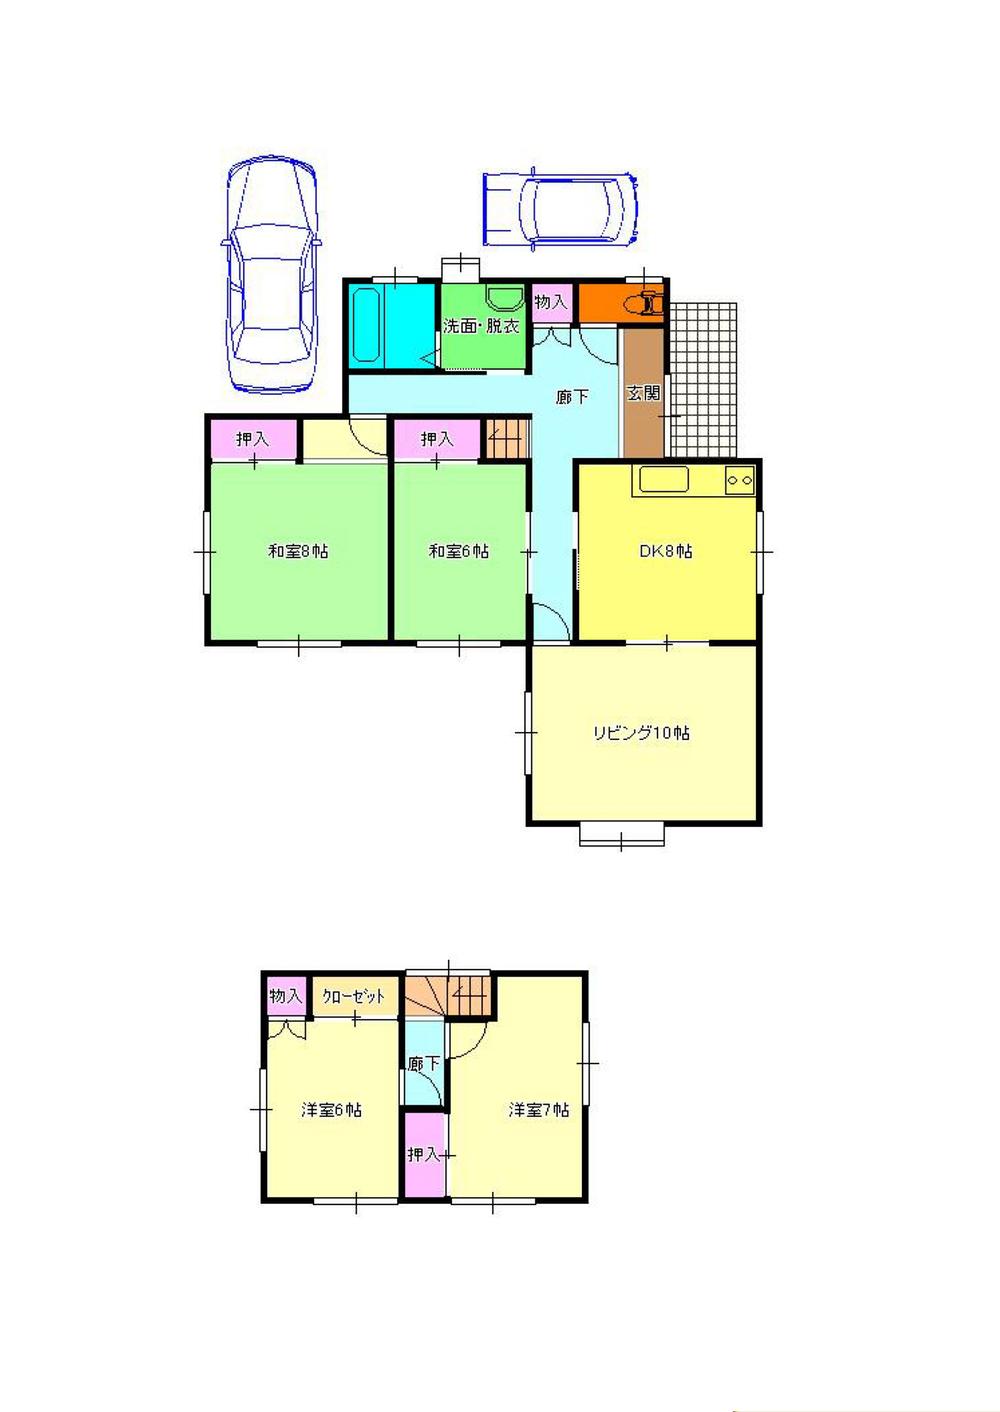 Floor plan. 15,980,000 yen, 5DK, Land area 198.45 sq m , Building area 110.96 sq m